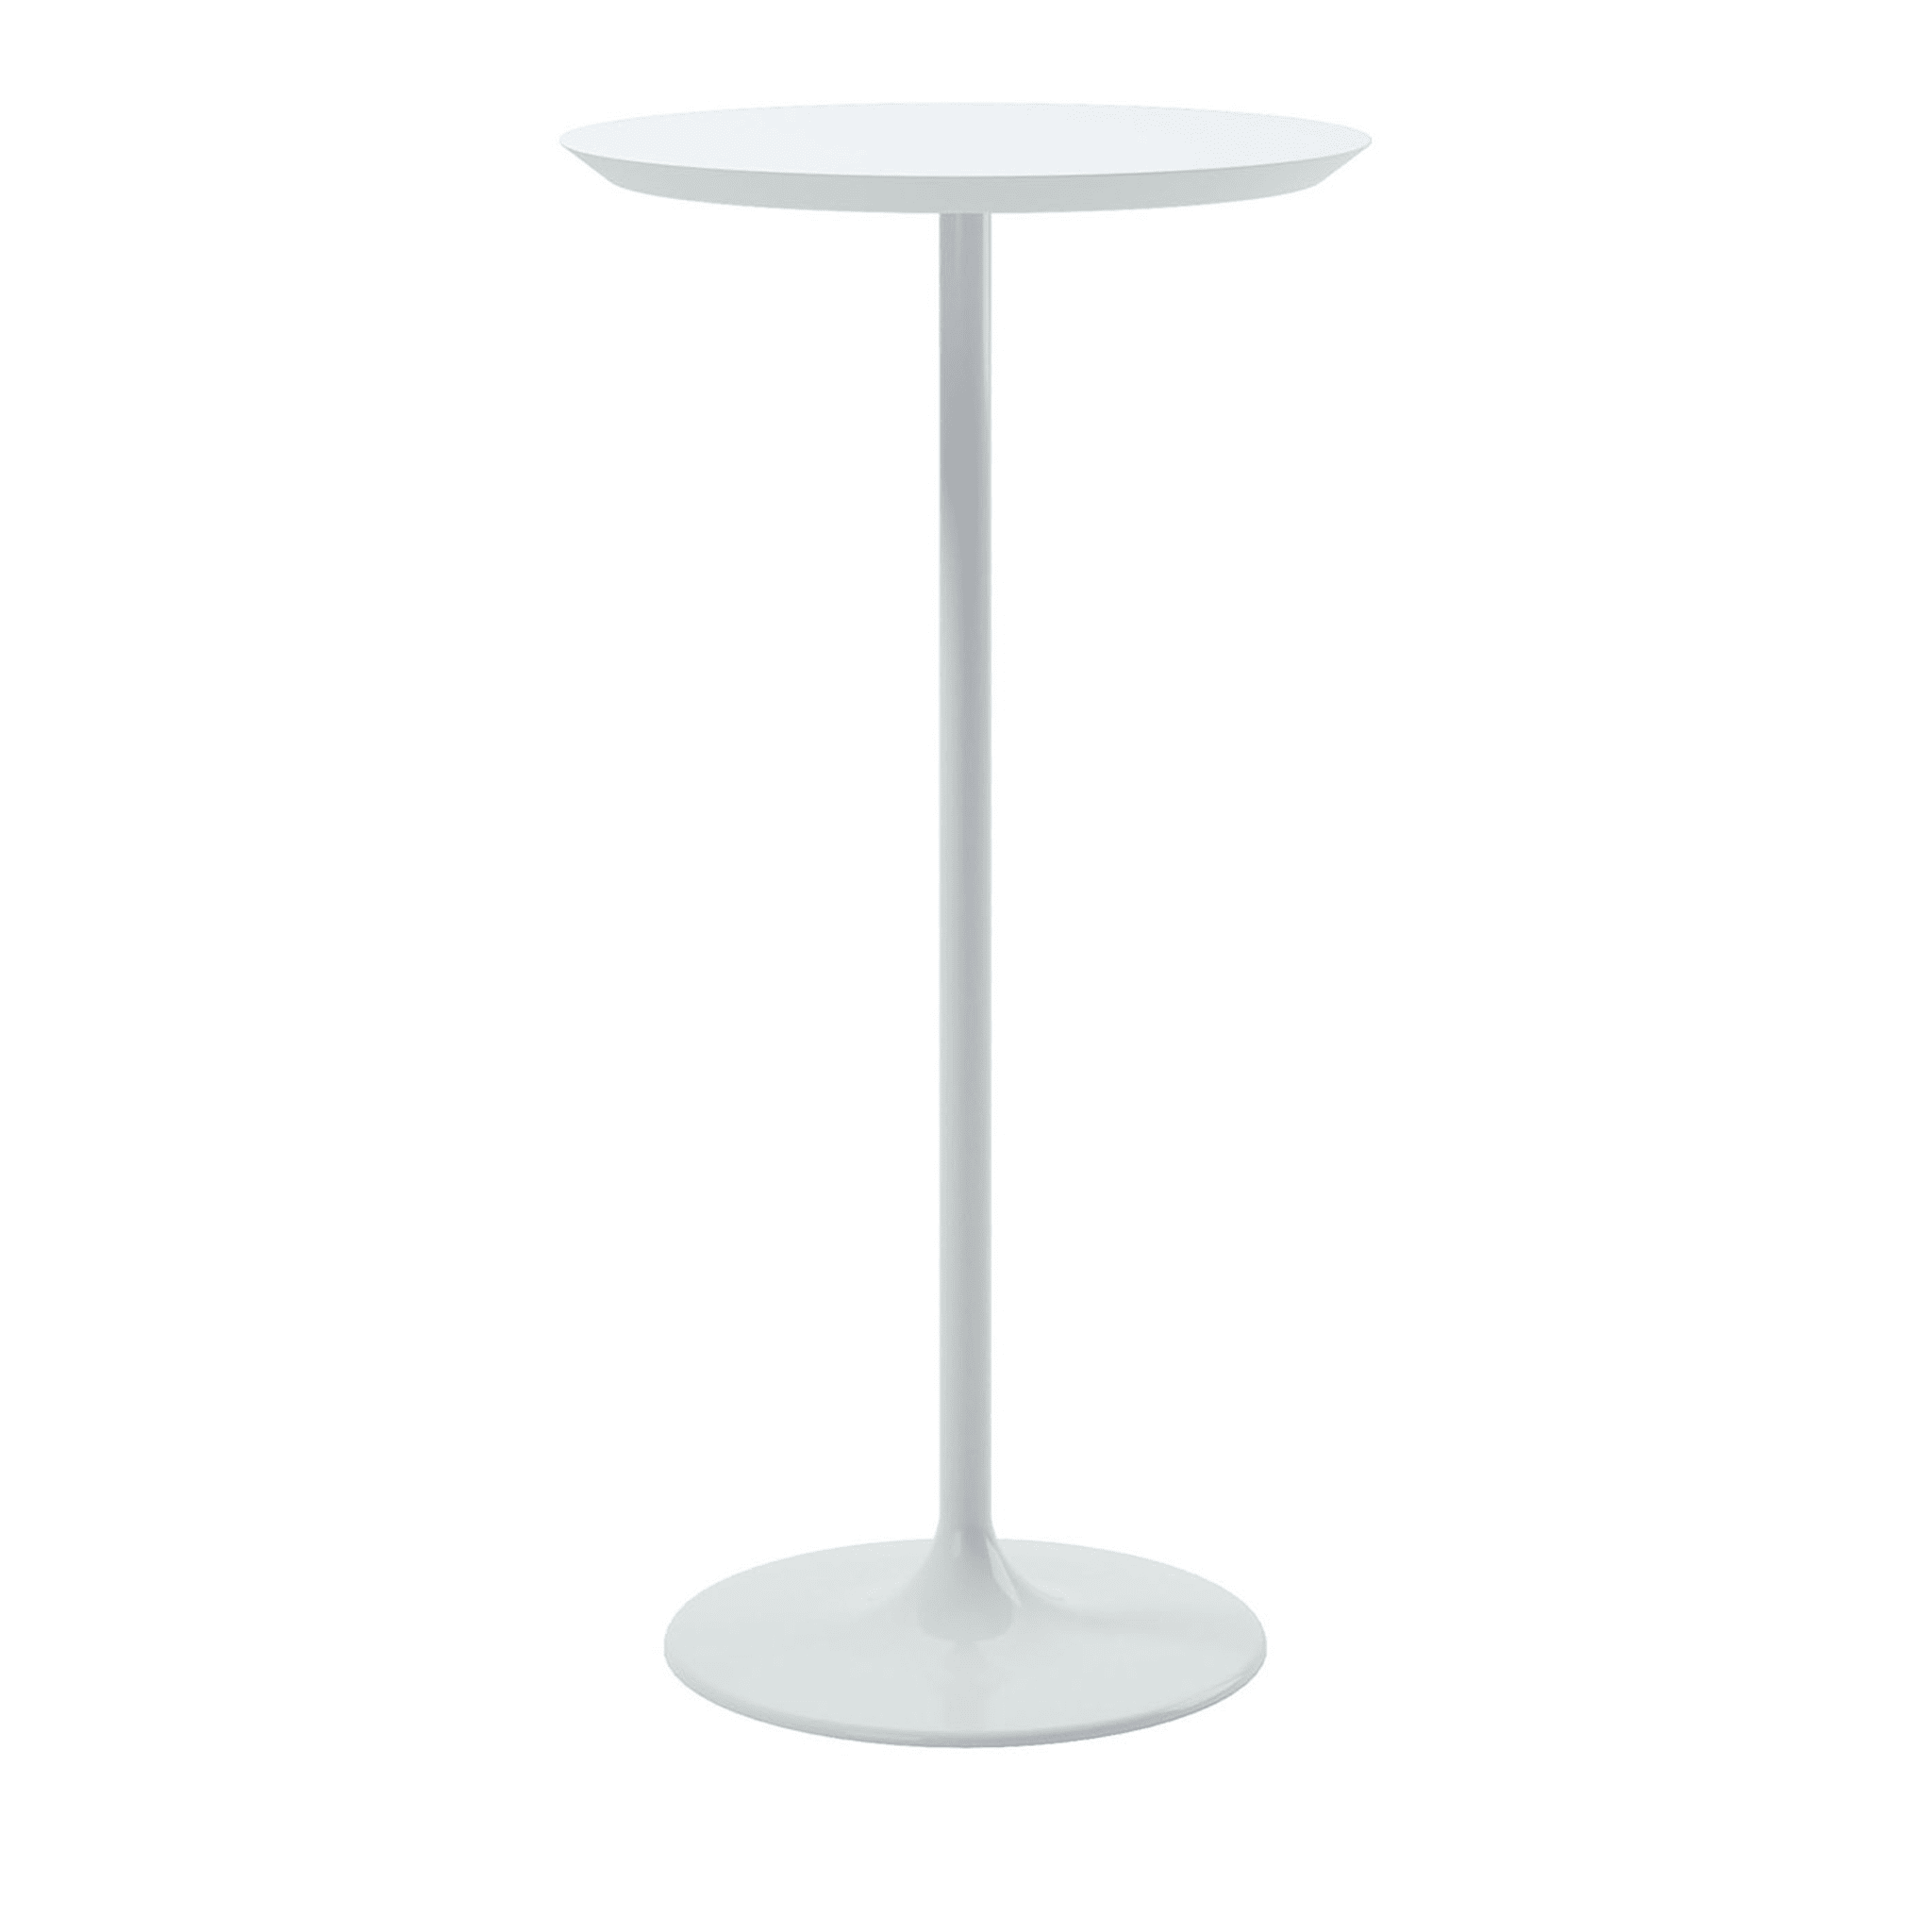 Malena White Round Bistro Table - Main view